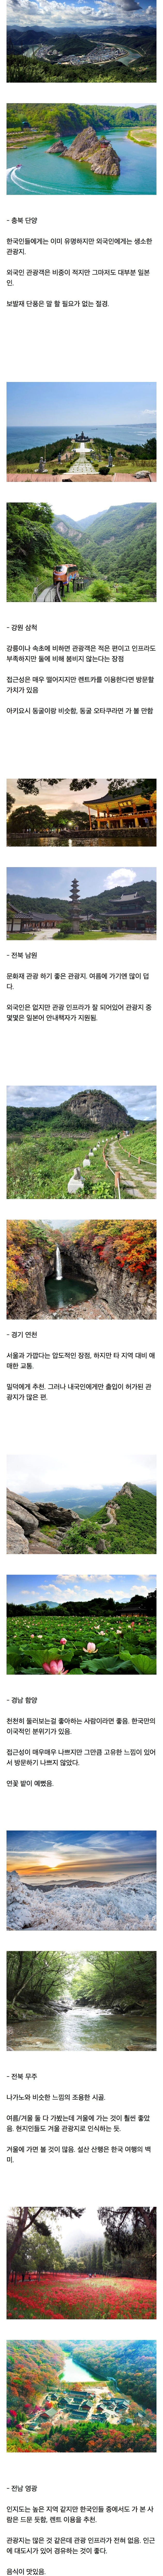 일본인이 뽑은 과소평가된 한국 관광지